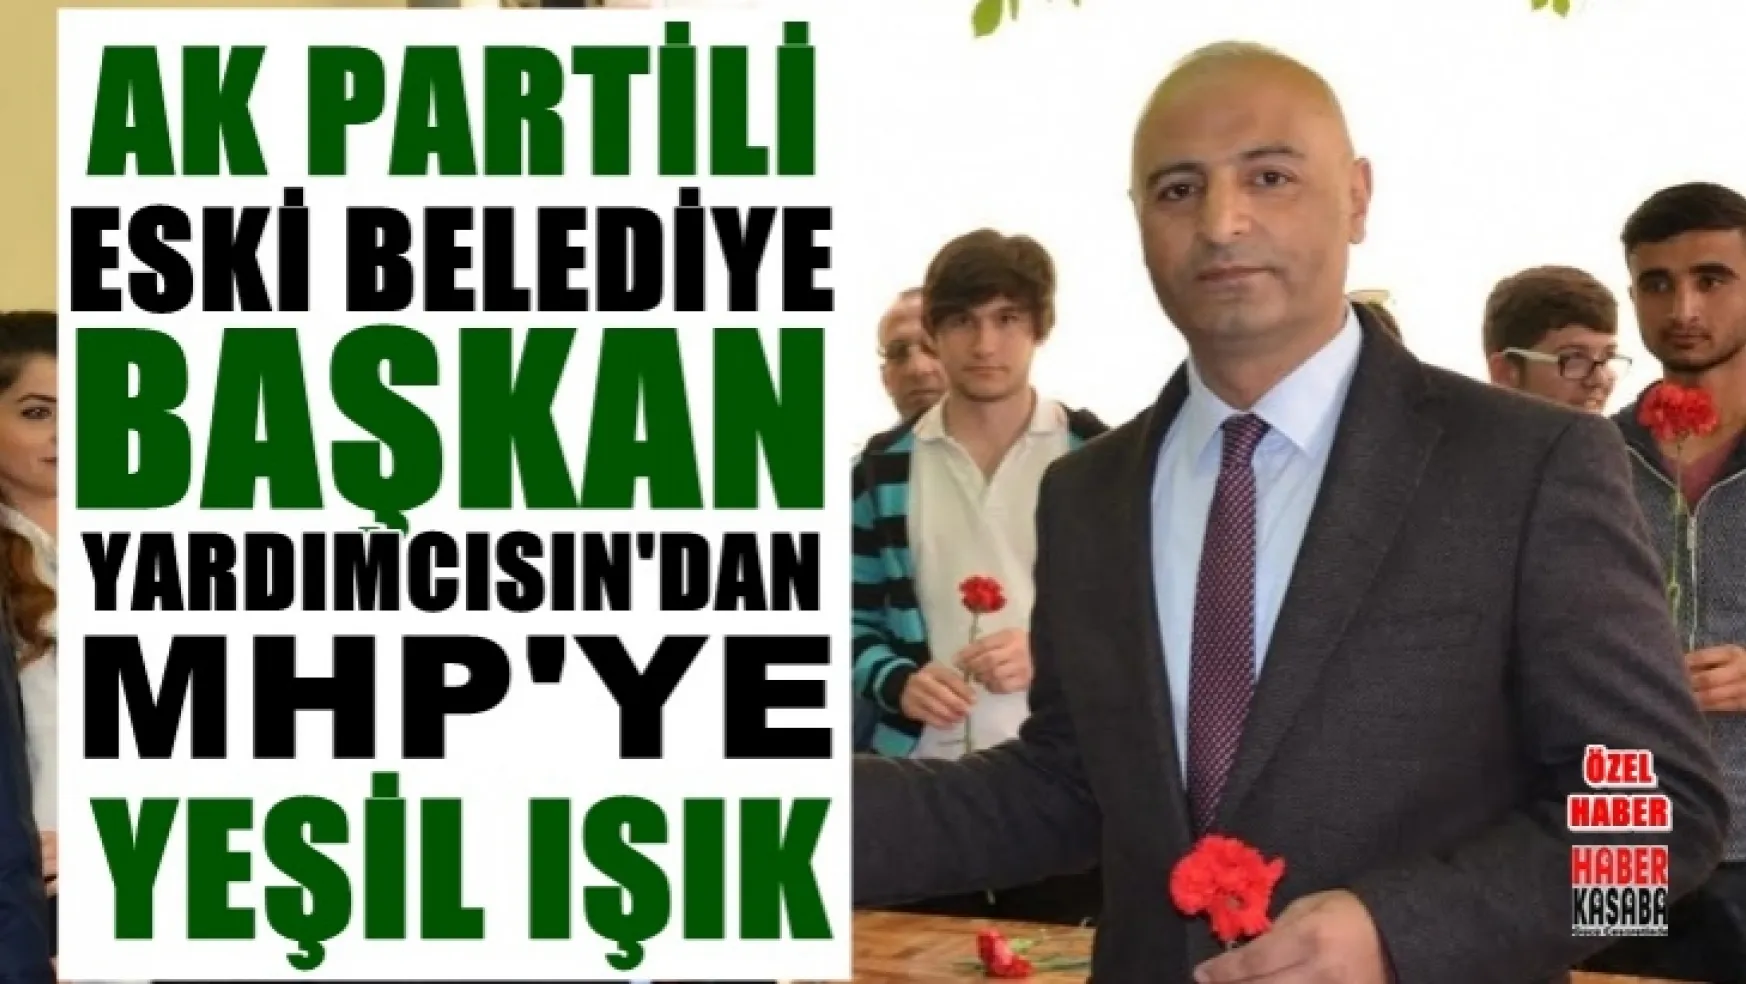 AK Partili Eski Belediye Başkan Yardımcısı Manisa'da MHP'den Aday Adayı mı? oluyor